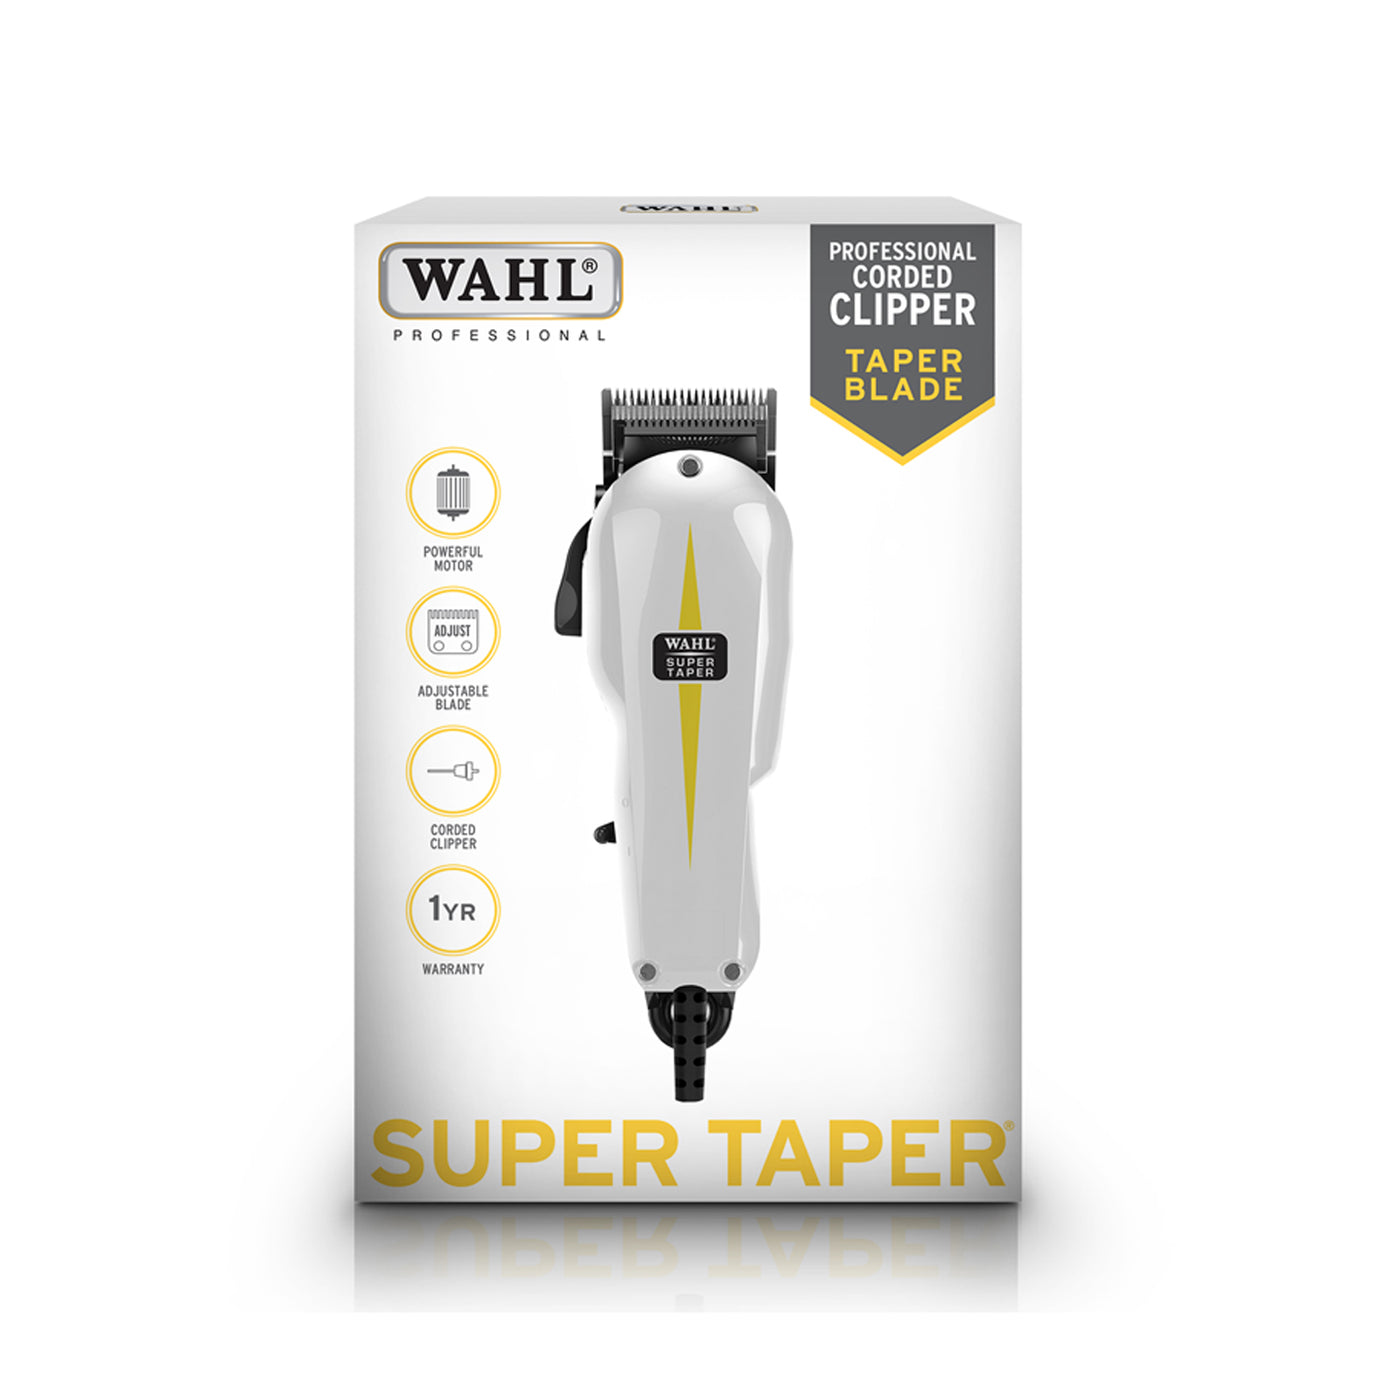 Wahl Super Taper Clipper packaging